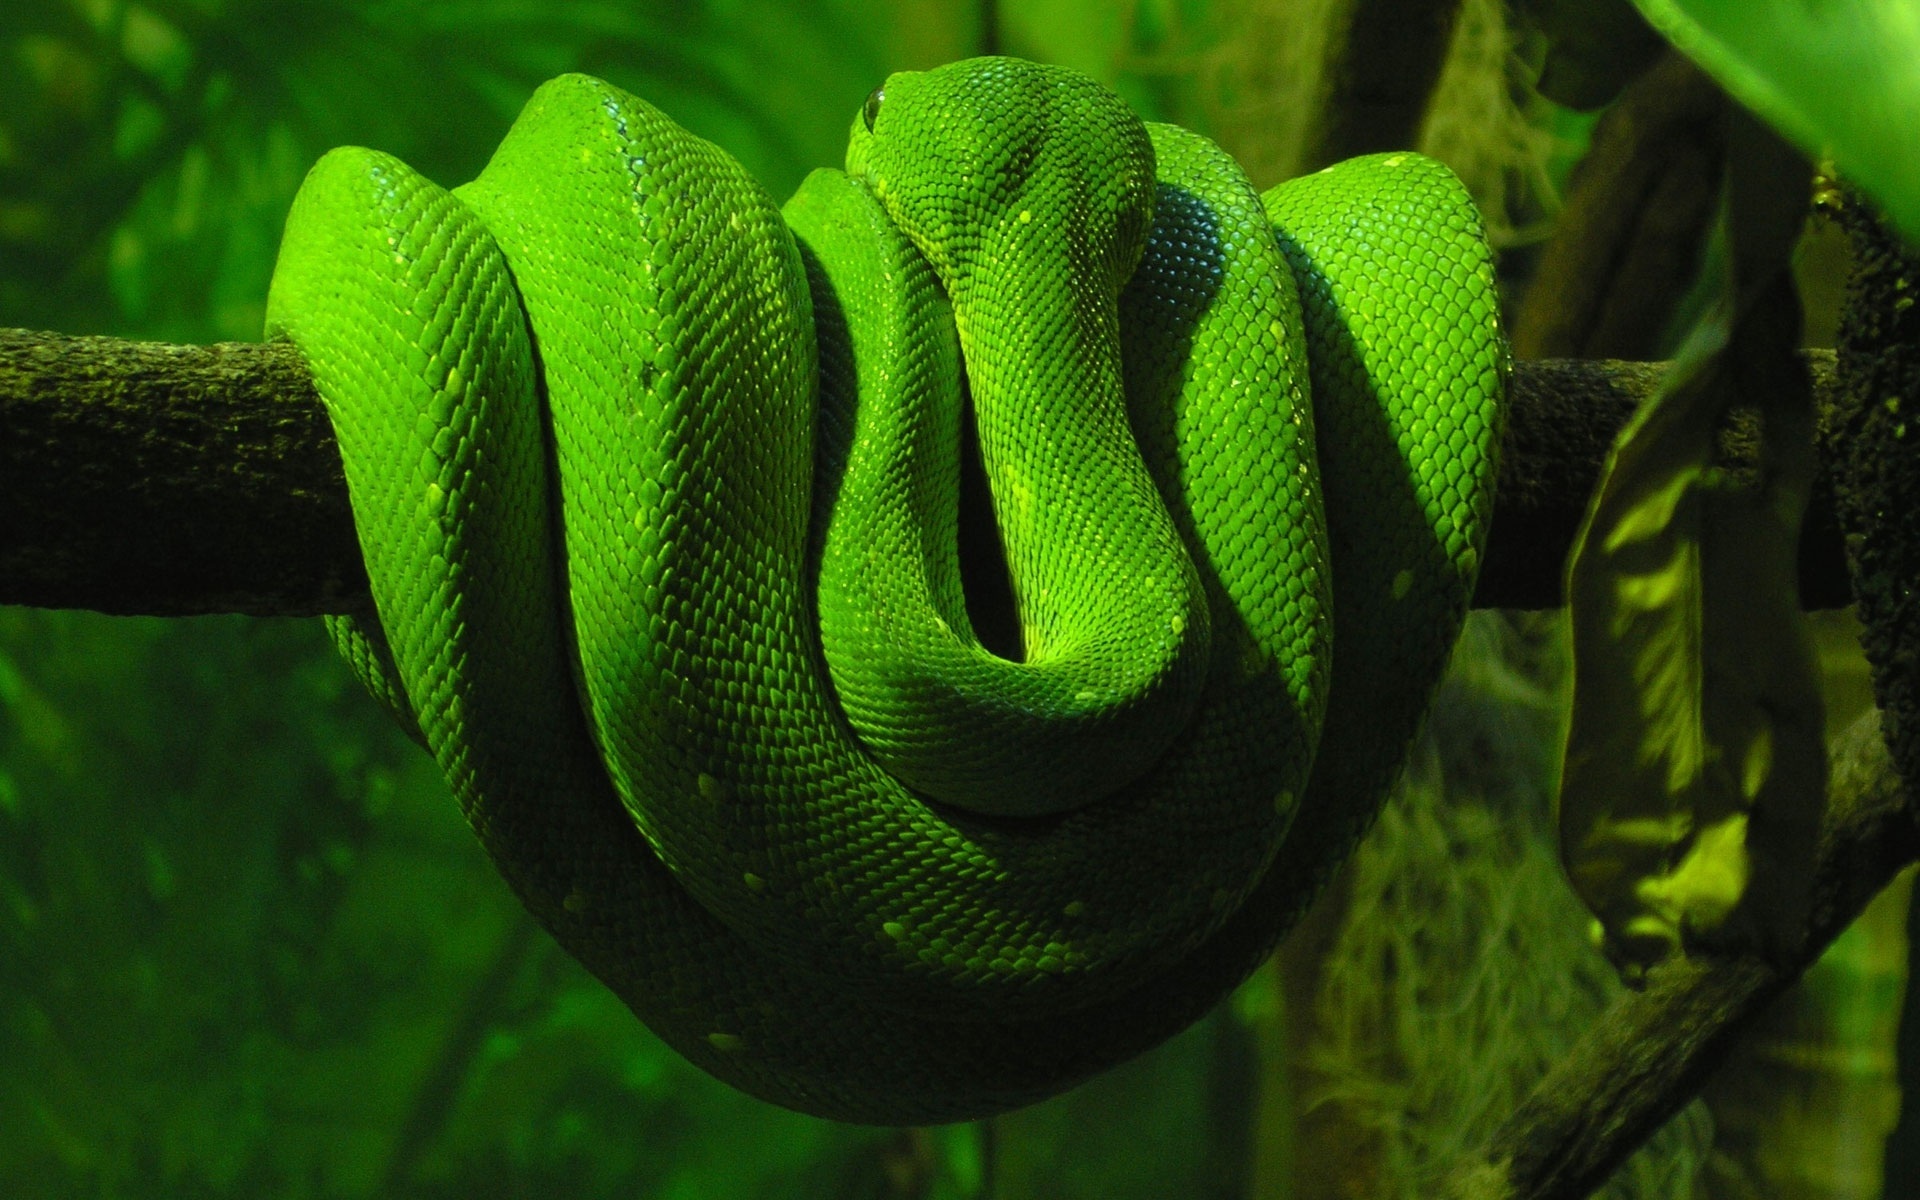 蛇的照片:蟒蛇吞下鳄鱼和其他动物…整个|生活科学万博苹果app2.0 - 万博登录,万博官方网站是什么